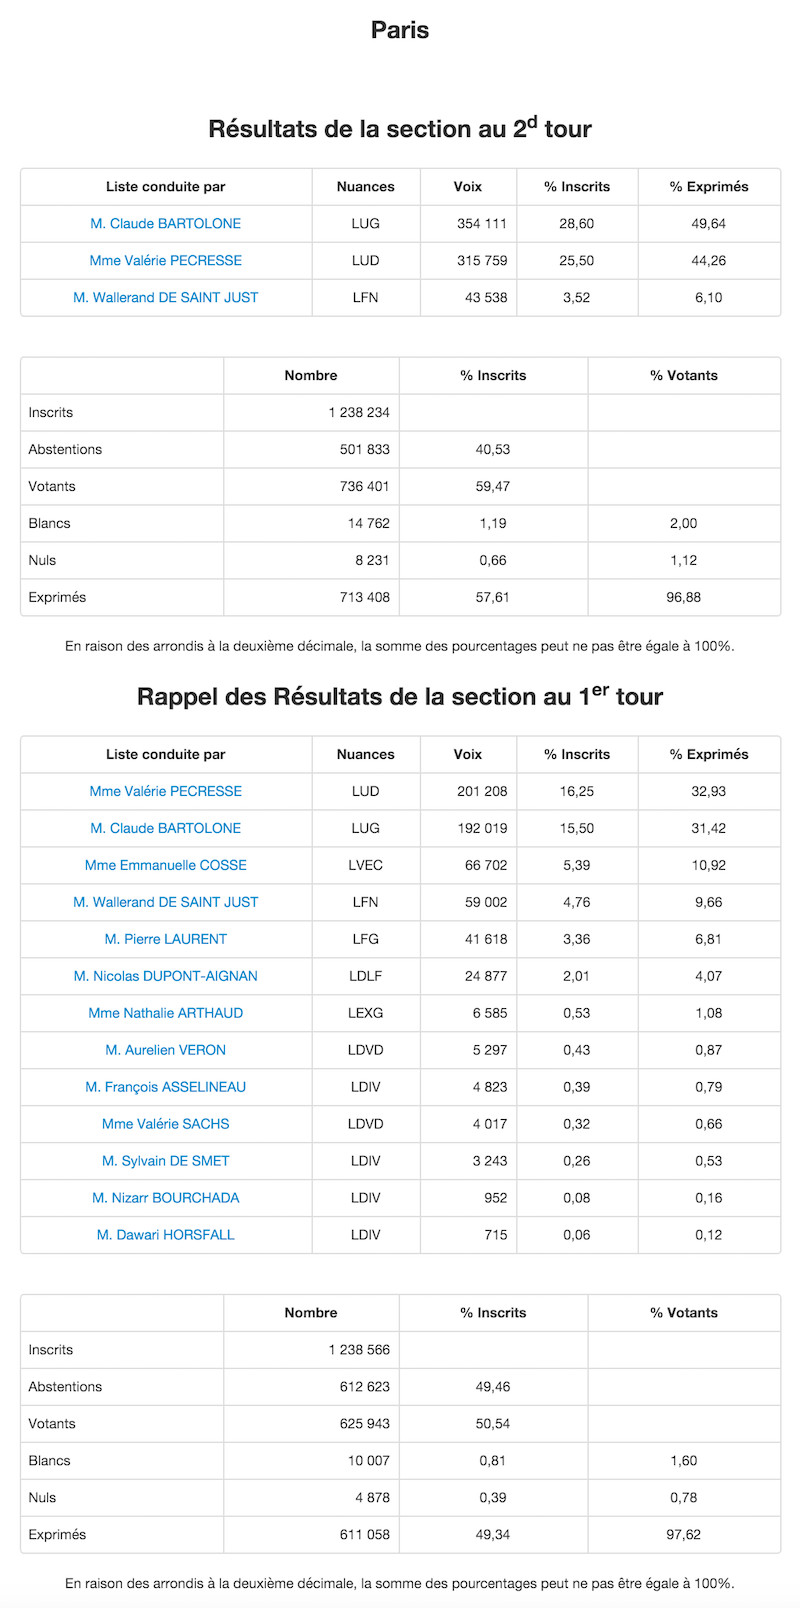 Régionales 2015 et 2010 dans le 16e arrondissement de Paris